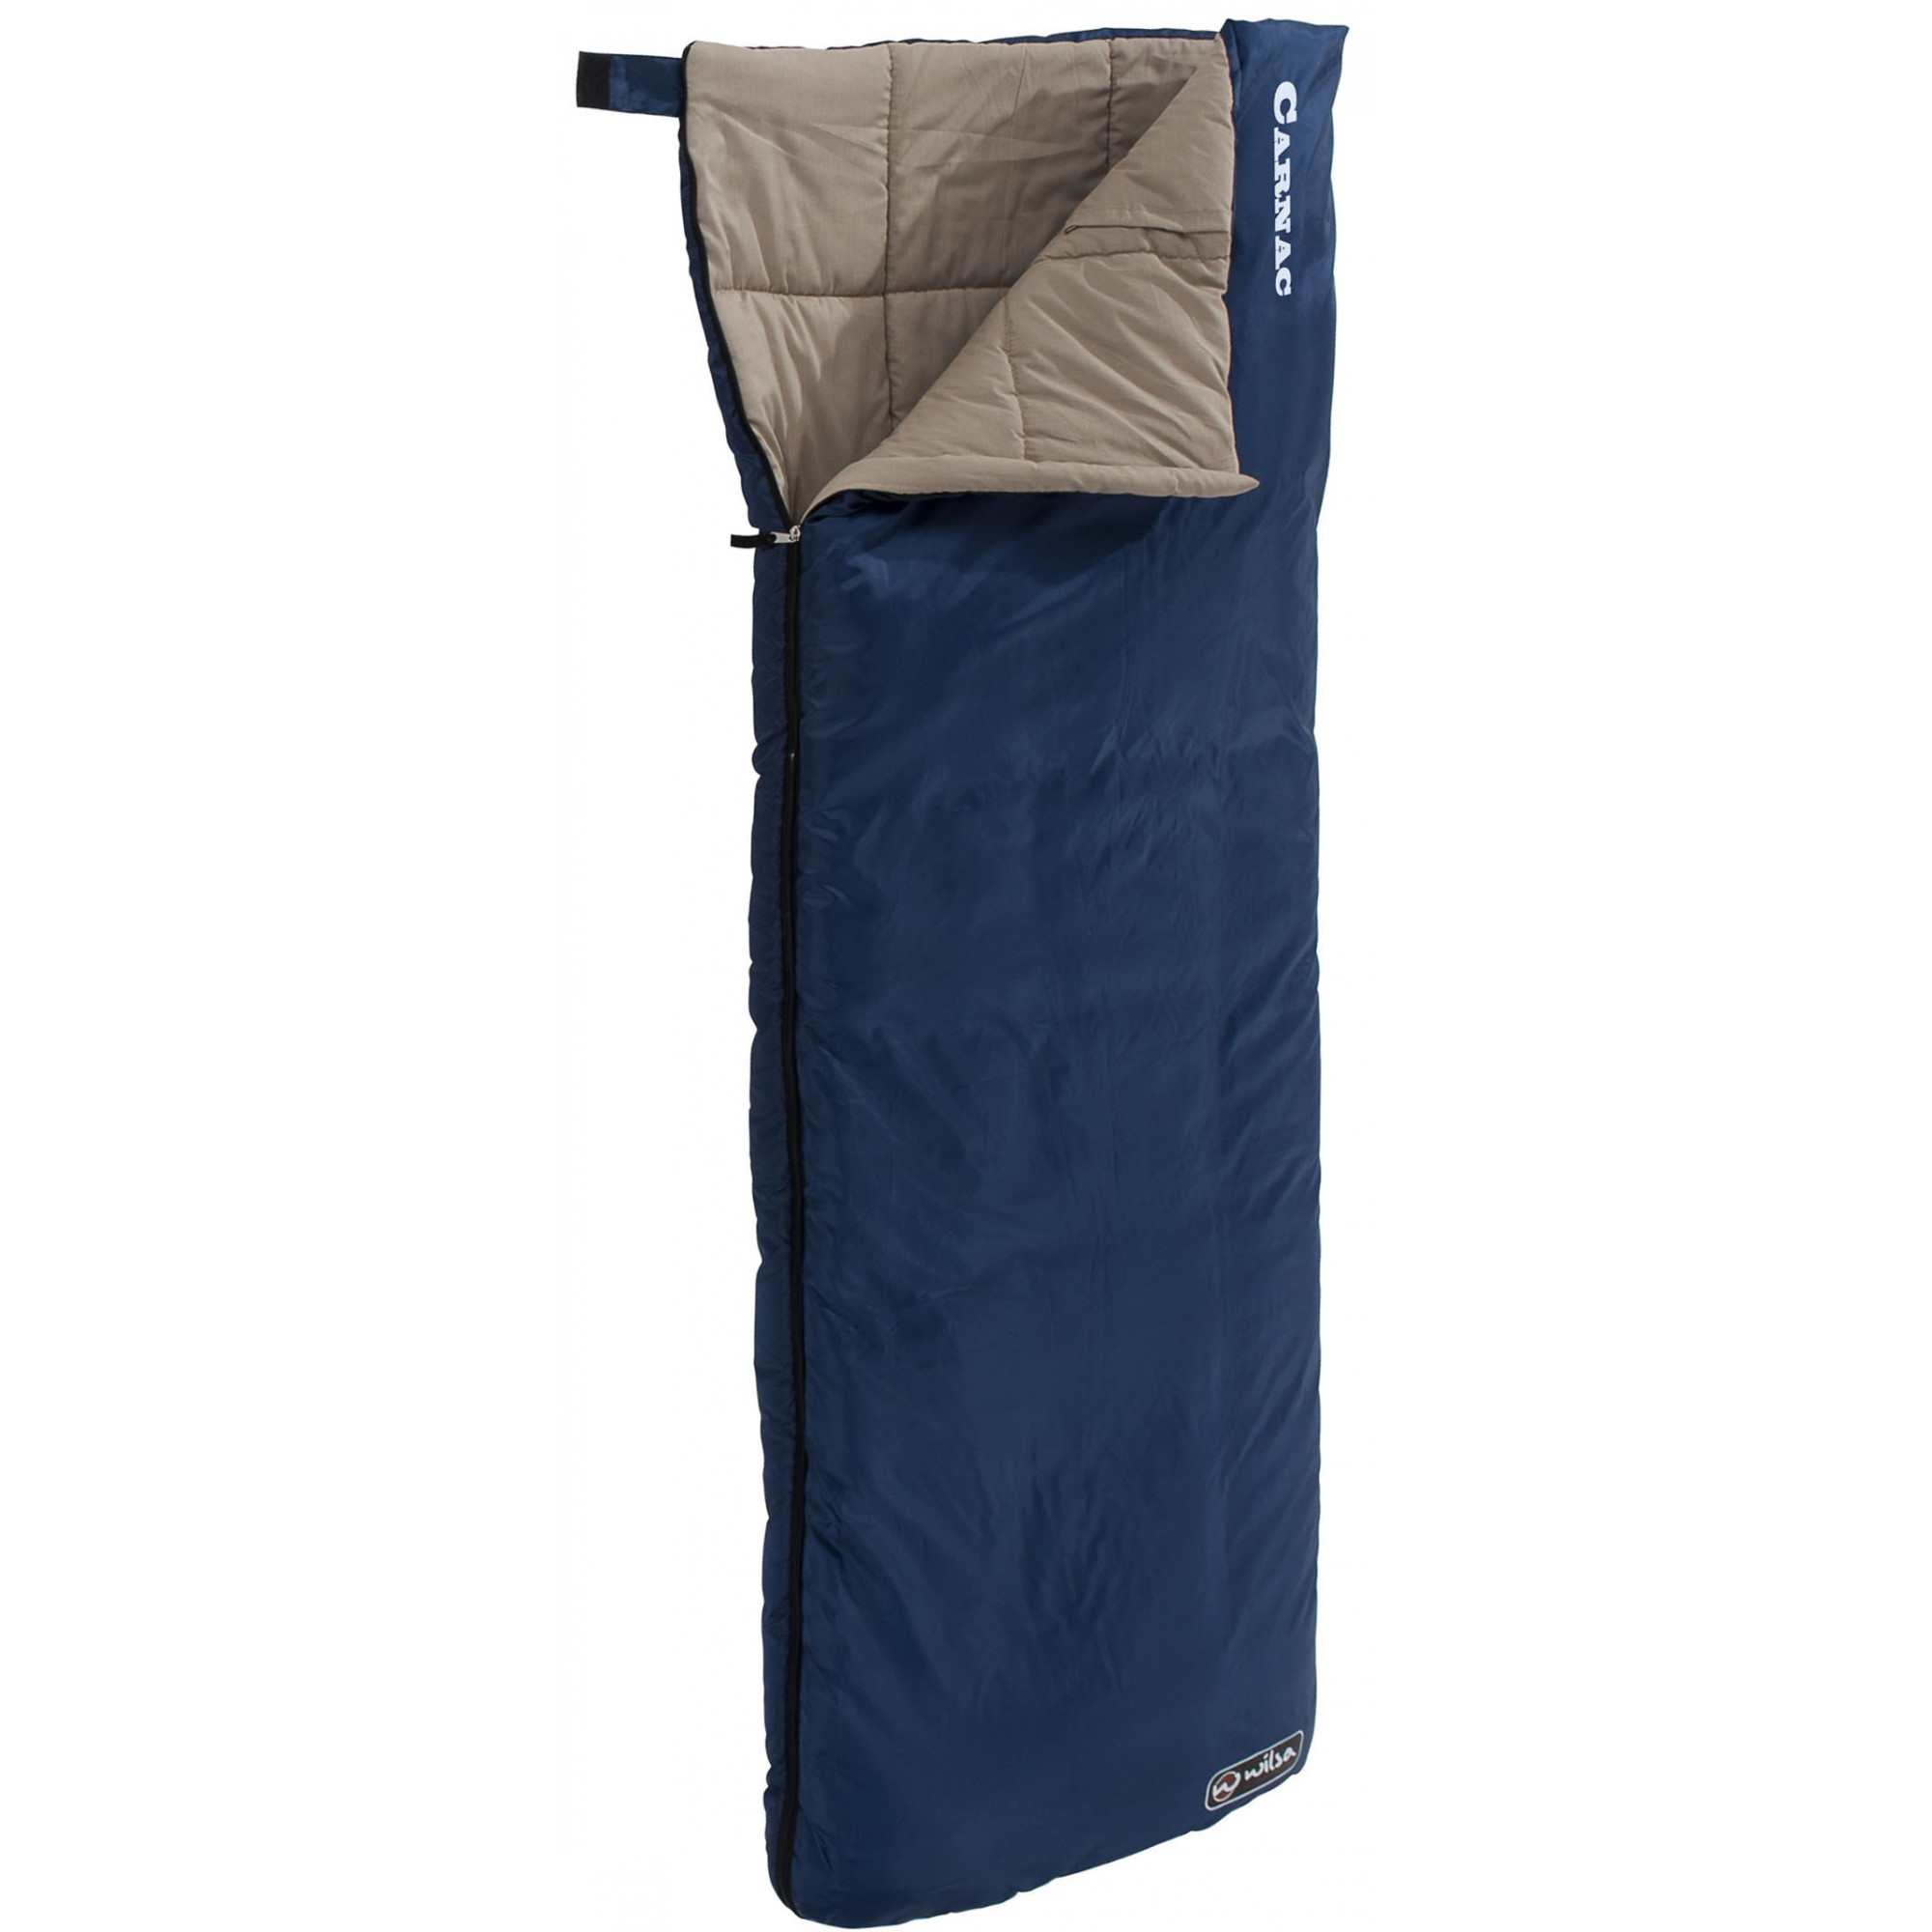 Sleeping bag Carnac Blue WILSA